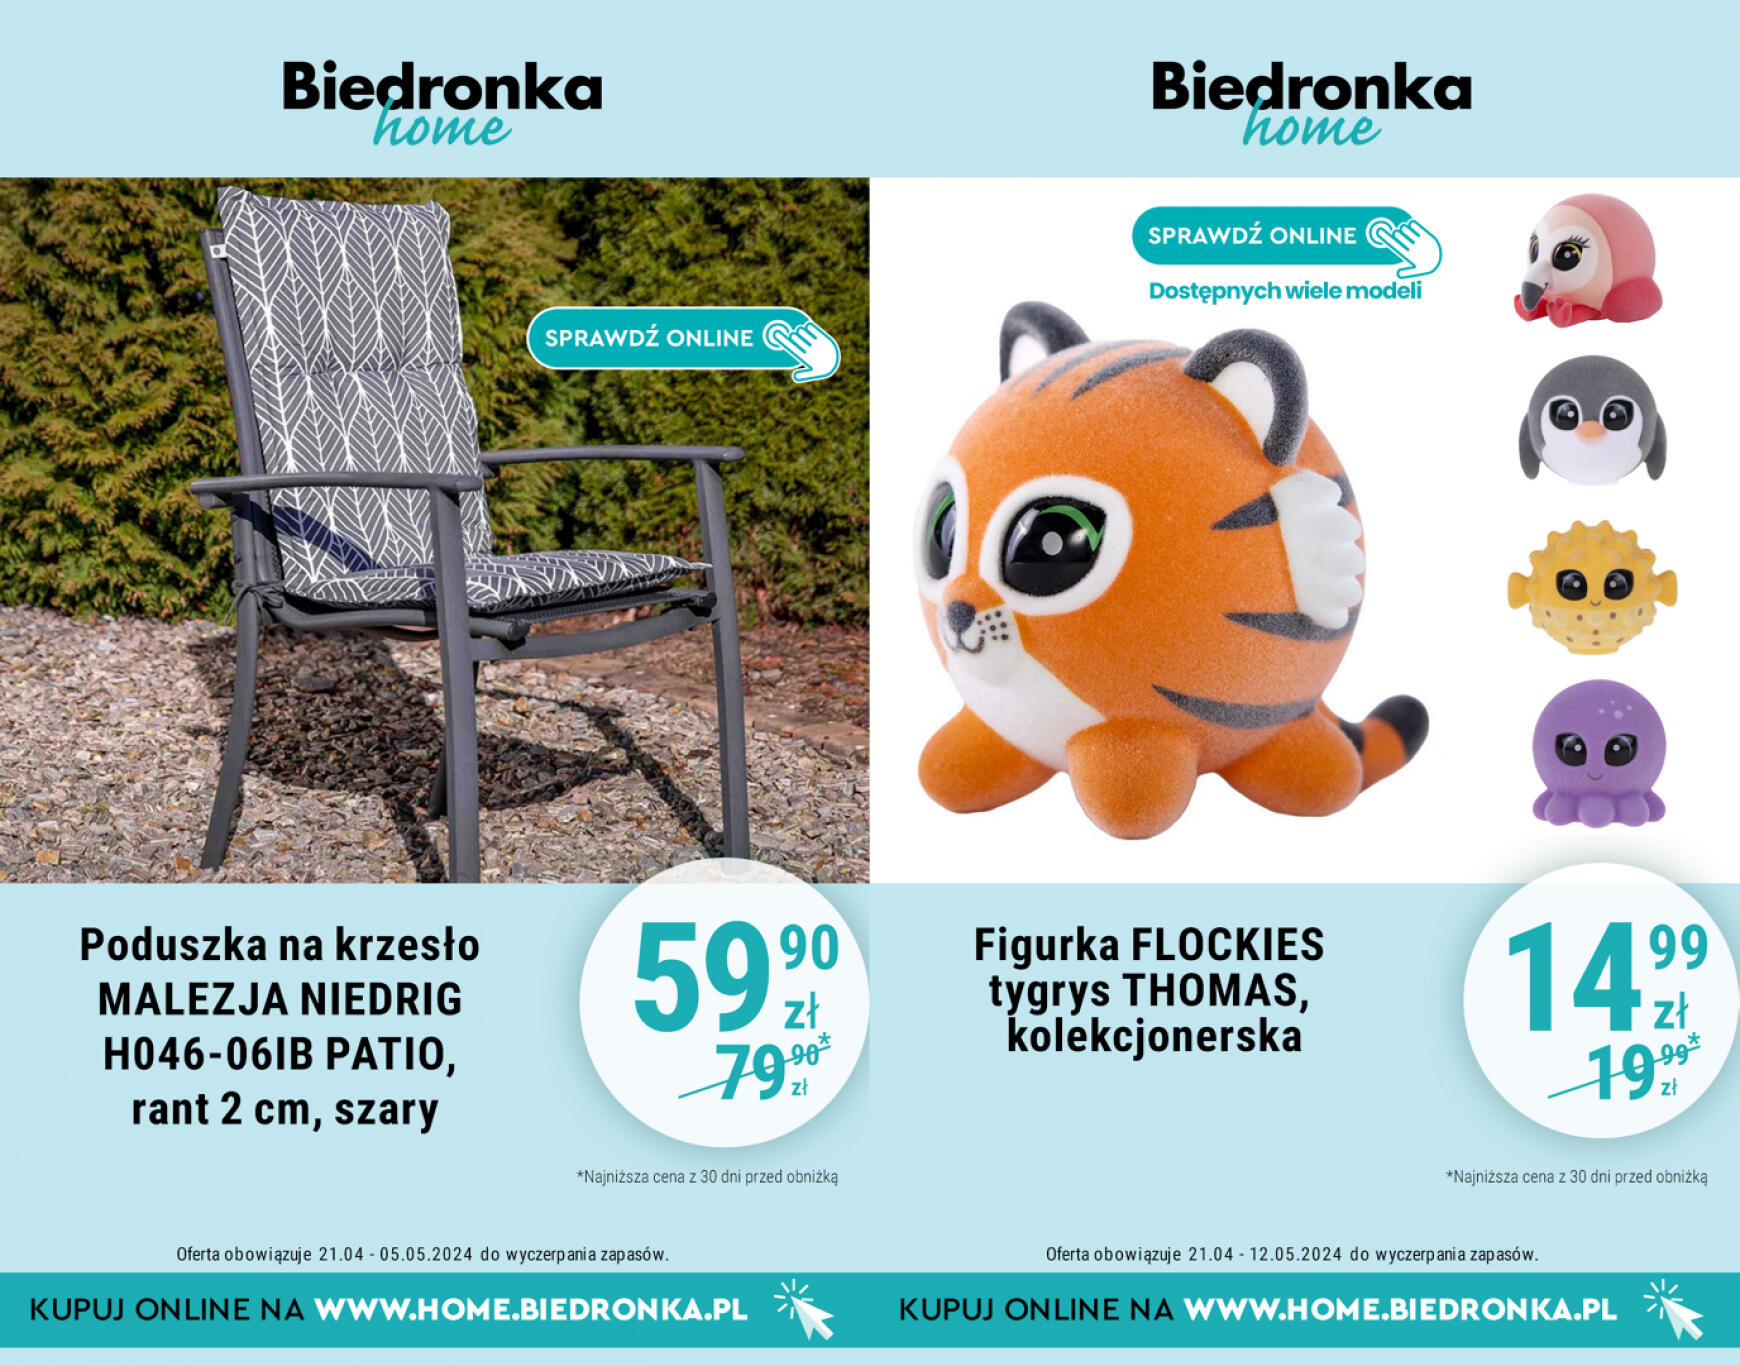 biedronka - Biedronka Home gazetka aktualna ważna od 21.04. - 12.05. - page: 4